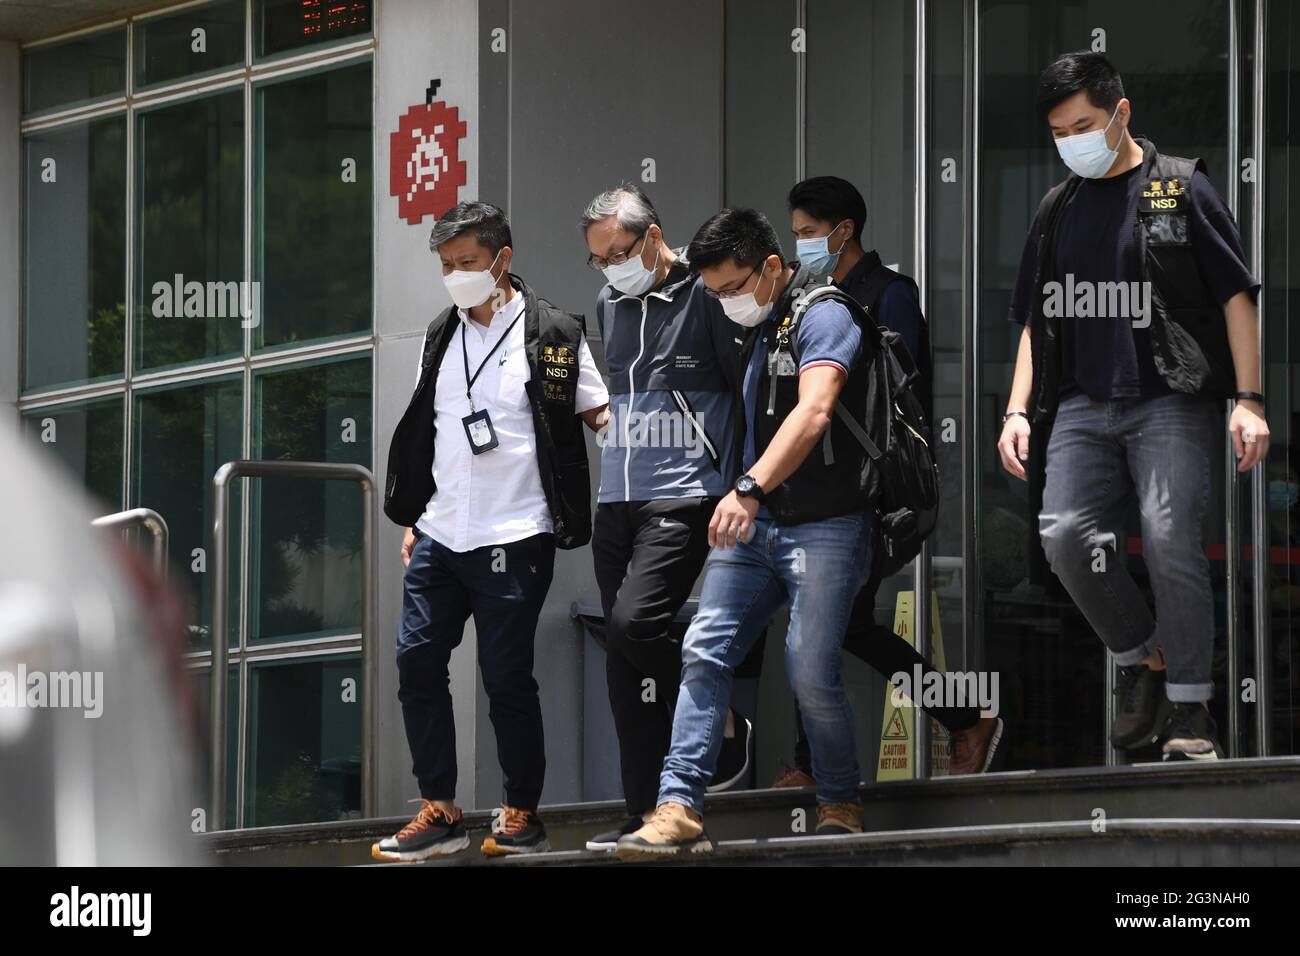 Hongkong, China. Juni 2021. Die Polizei in Hongkong verhaftete am 17. Juni 2021 fünf leitende Angestellte von Next Digital wegen des Verbrechens, die Staatssicherheit in Hongkong, China, zu gefährden.(Foto: TPG/cnsphotos) Quelle: TopPhoto/Alamy Live News Stockfoto